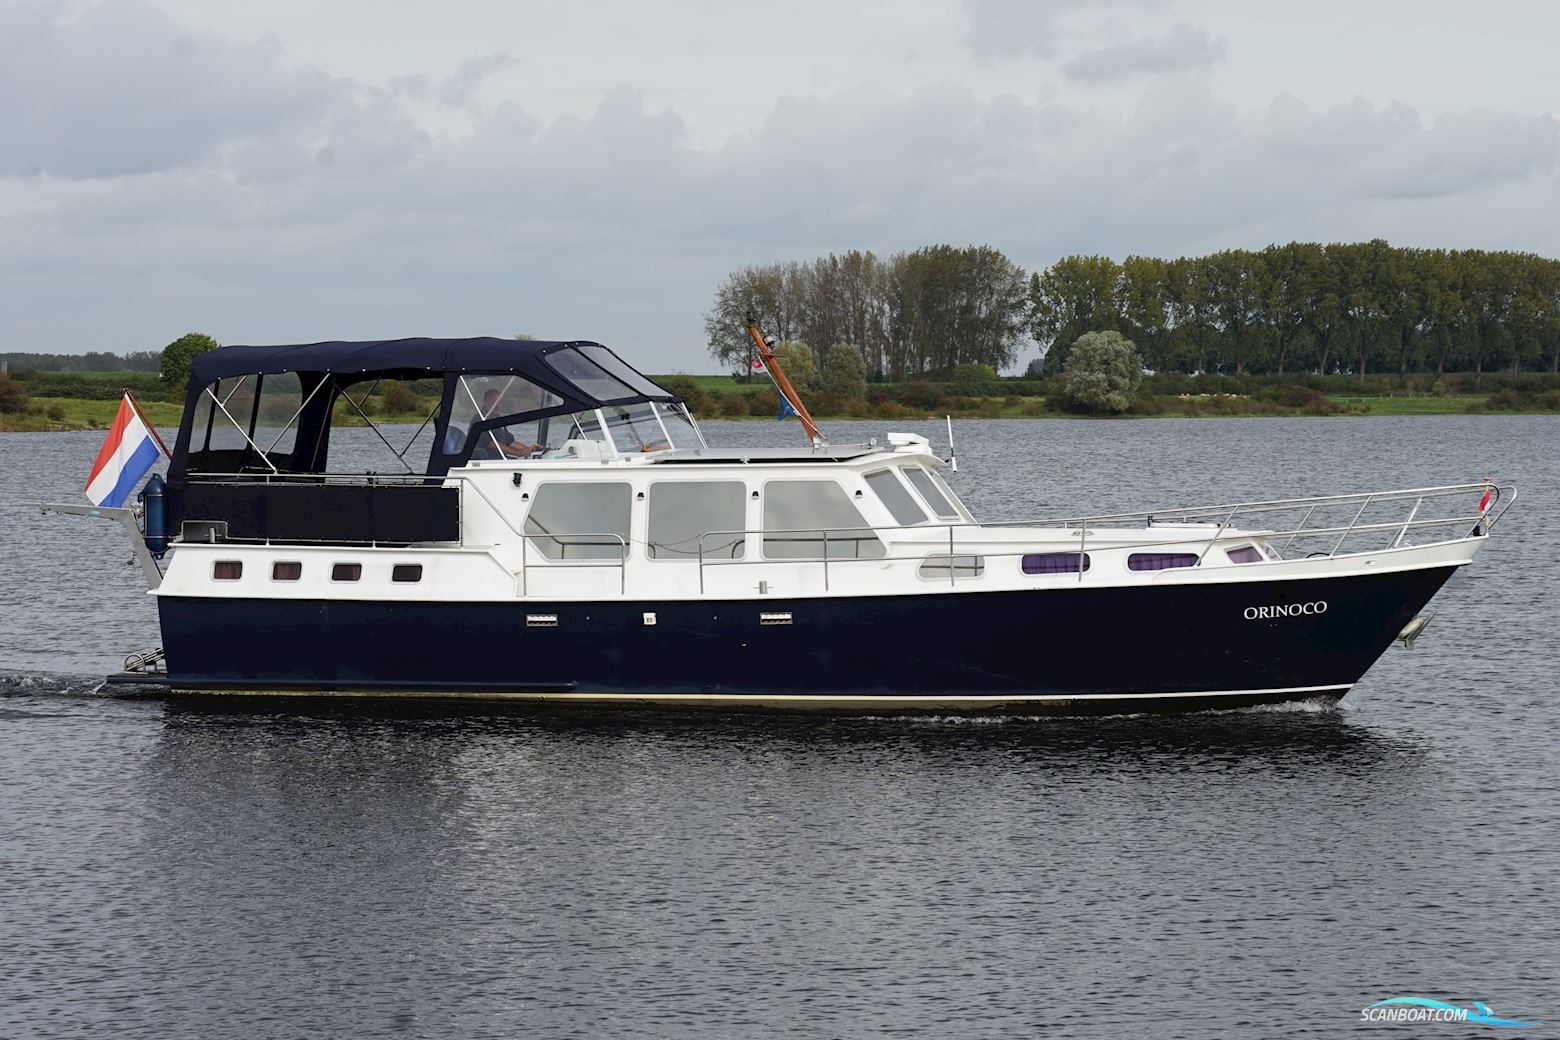 Adema 1500 Motorbåd 1996, med Daf motor, Holland